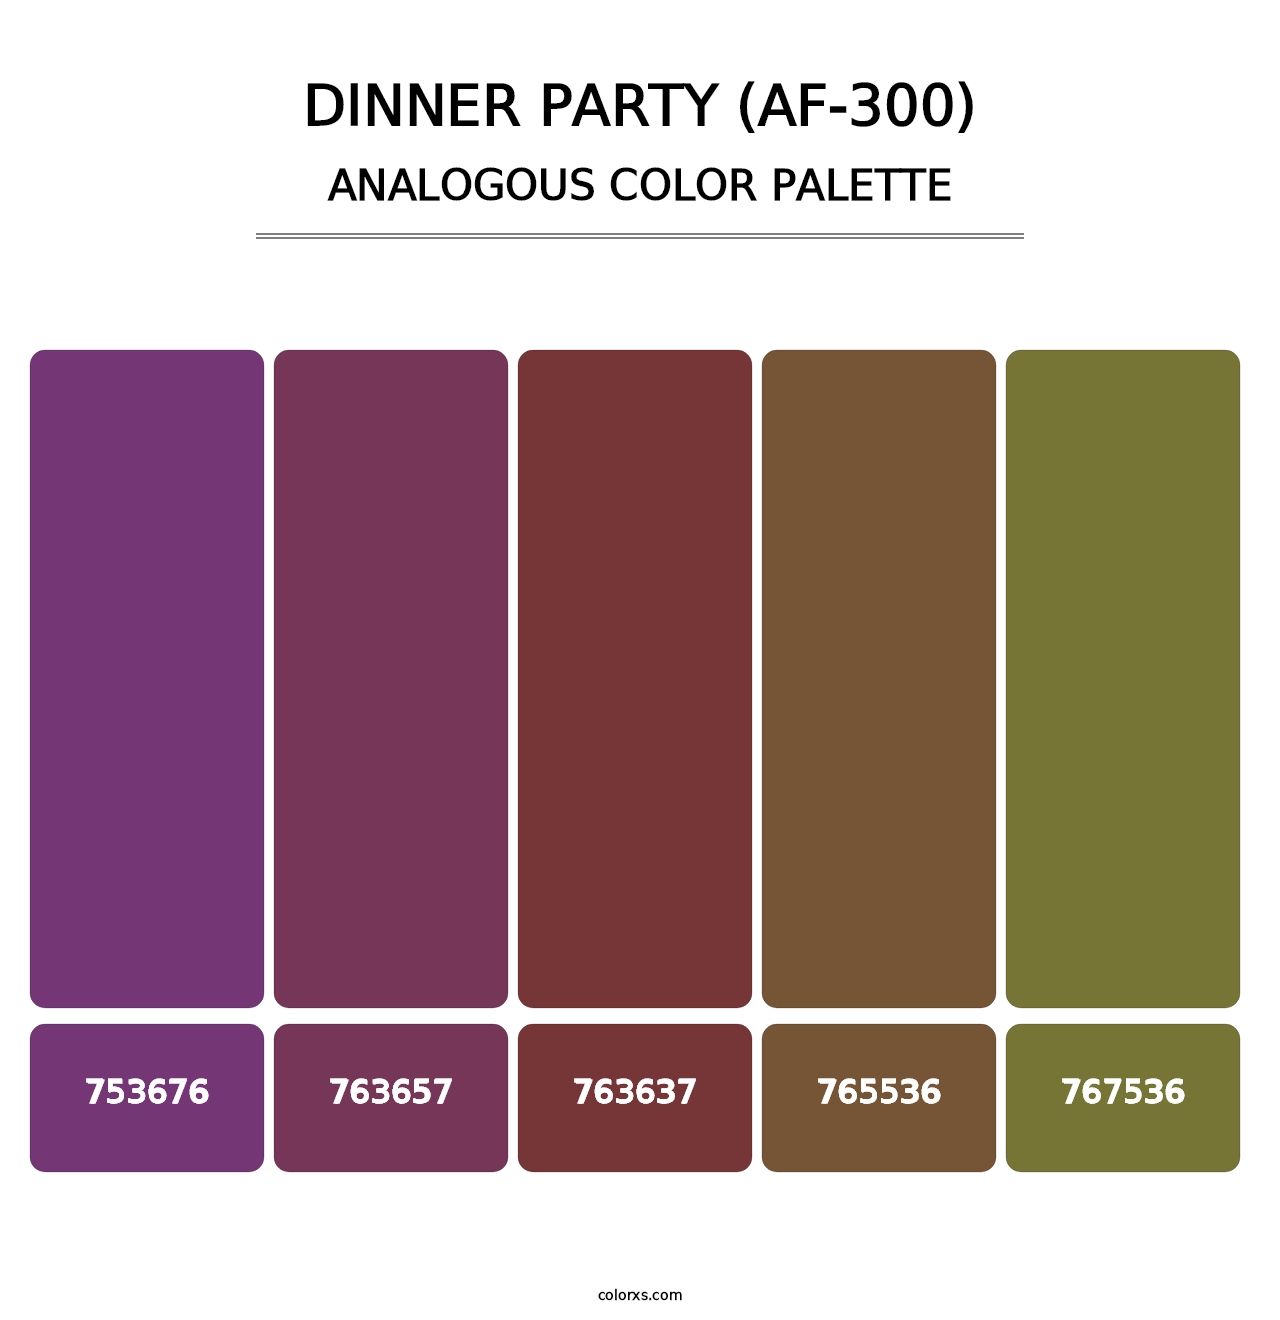 Dinner Party (AF-300) - Analogous Color Palette